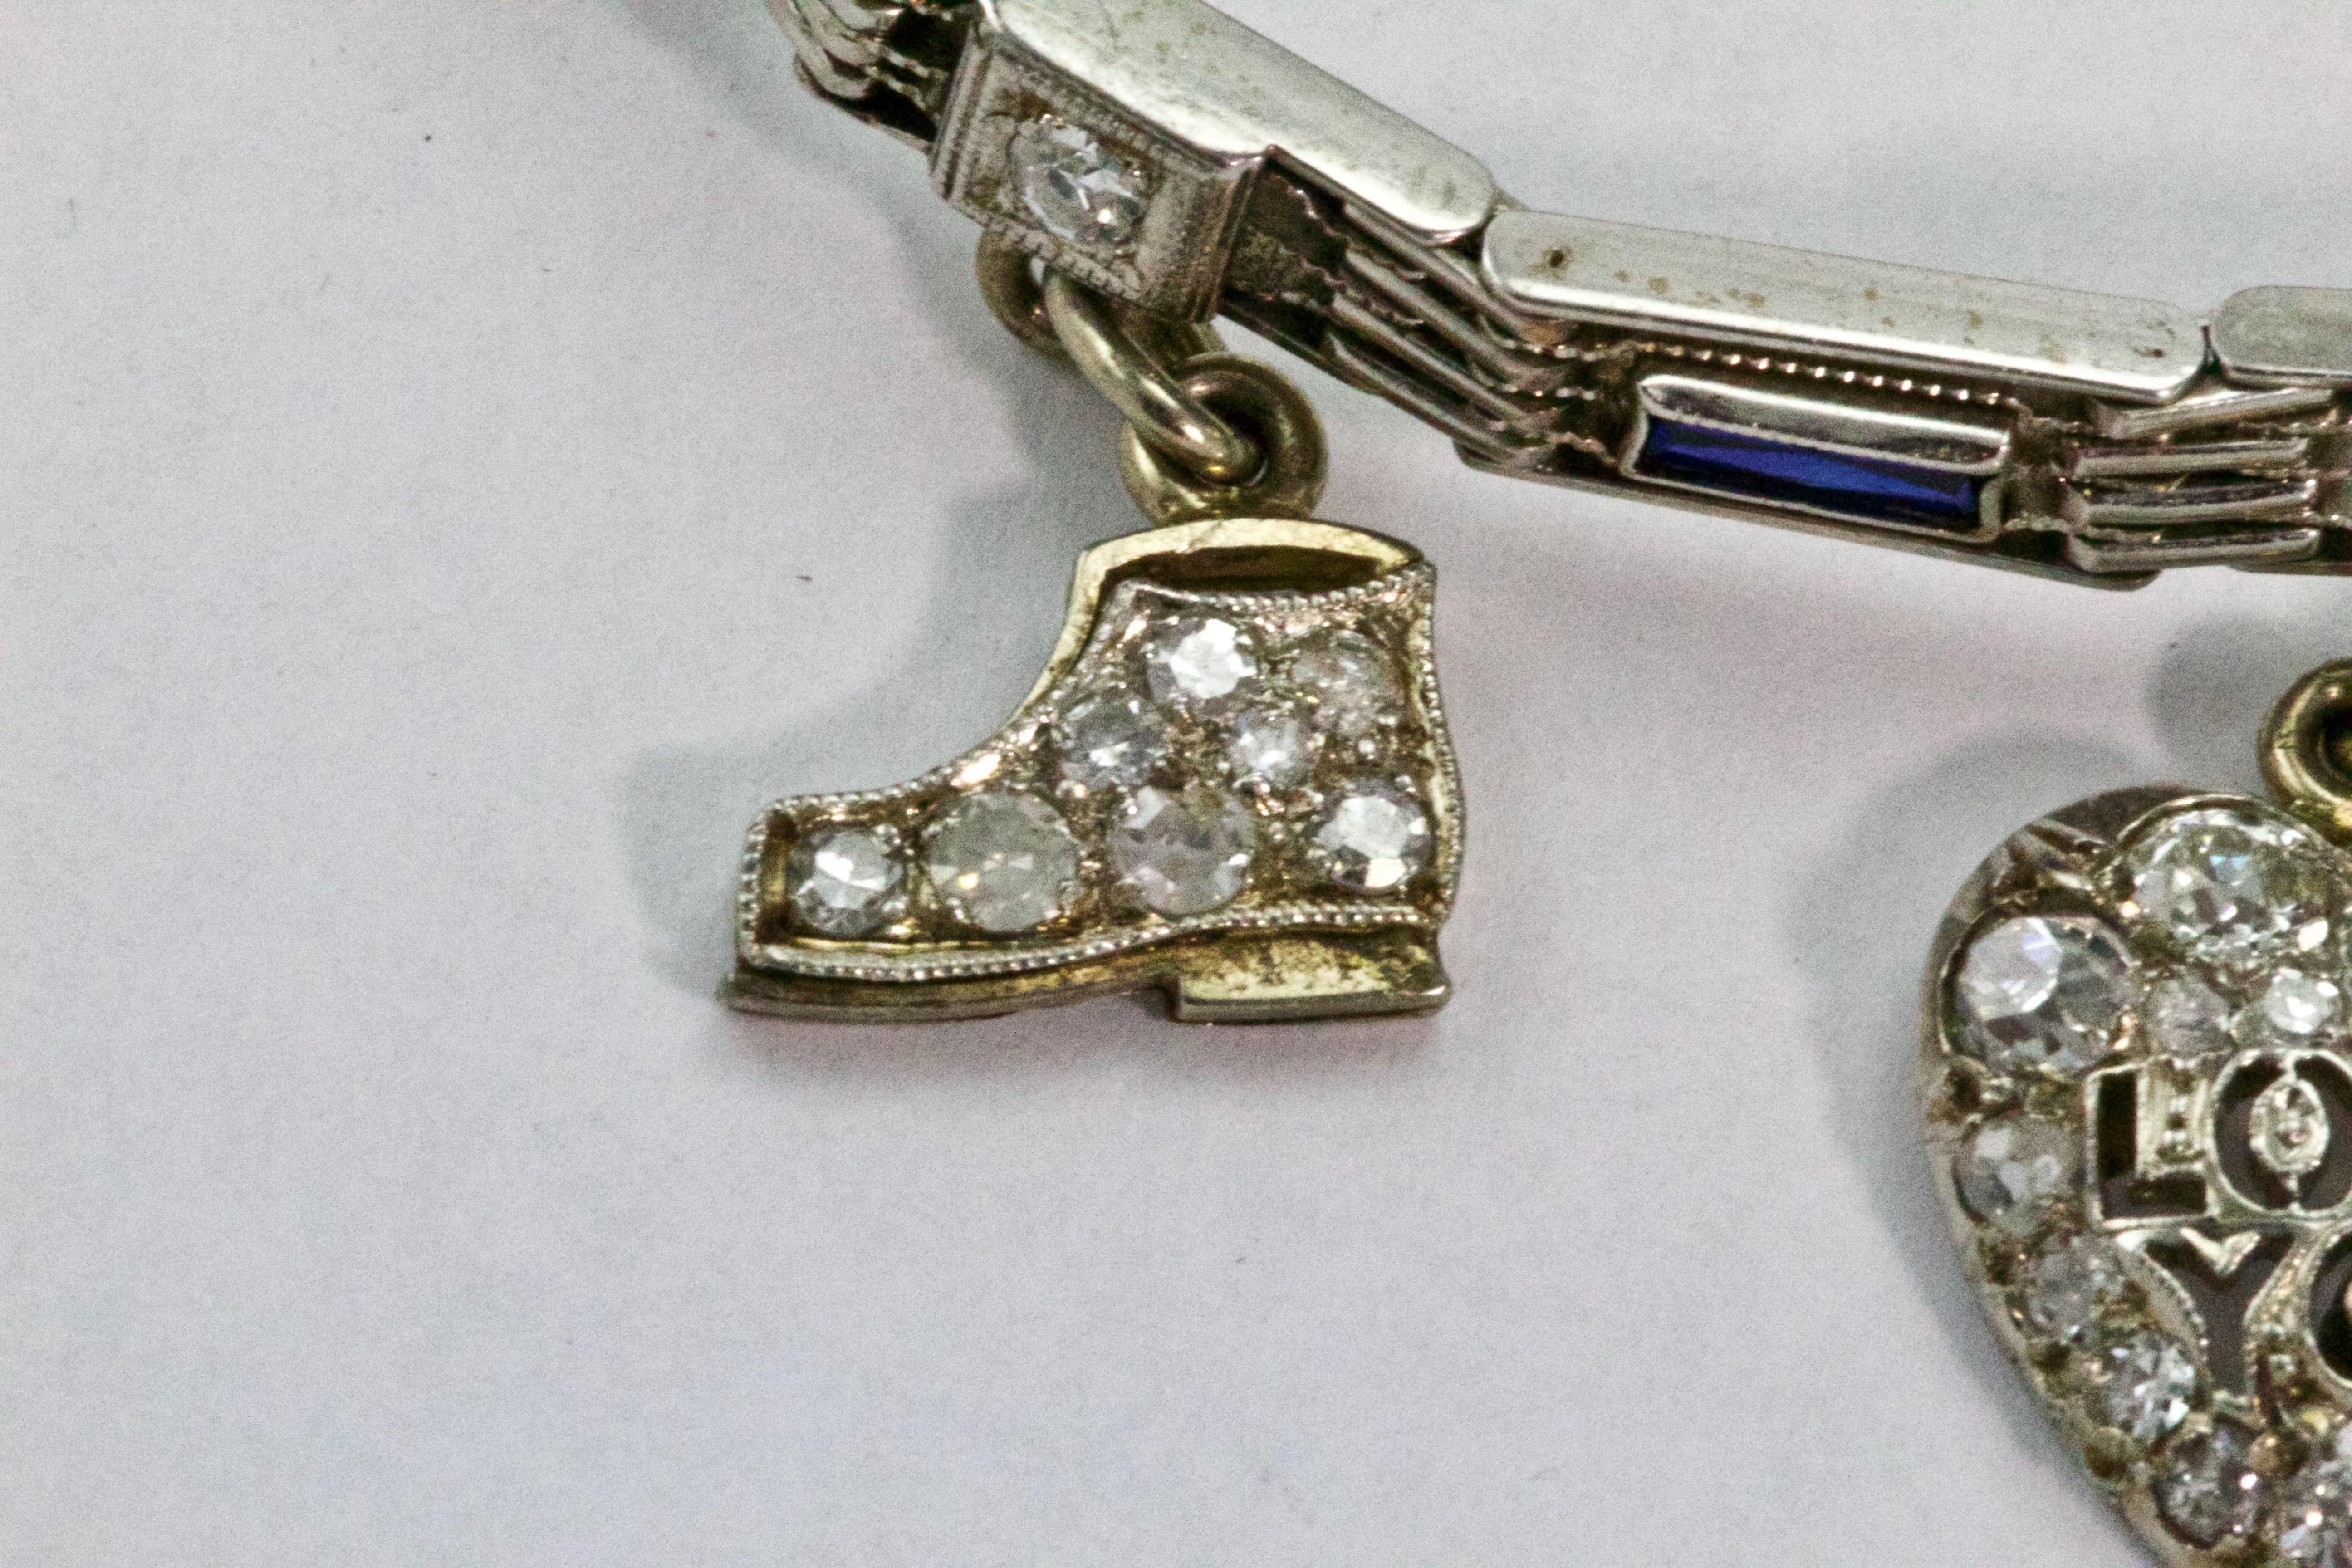 opal charm for bracelet